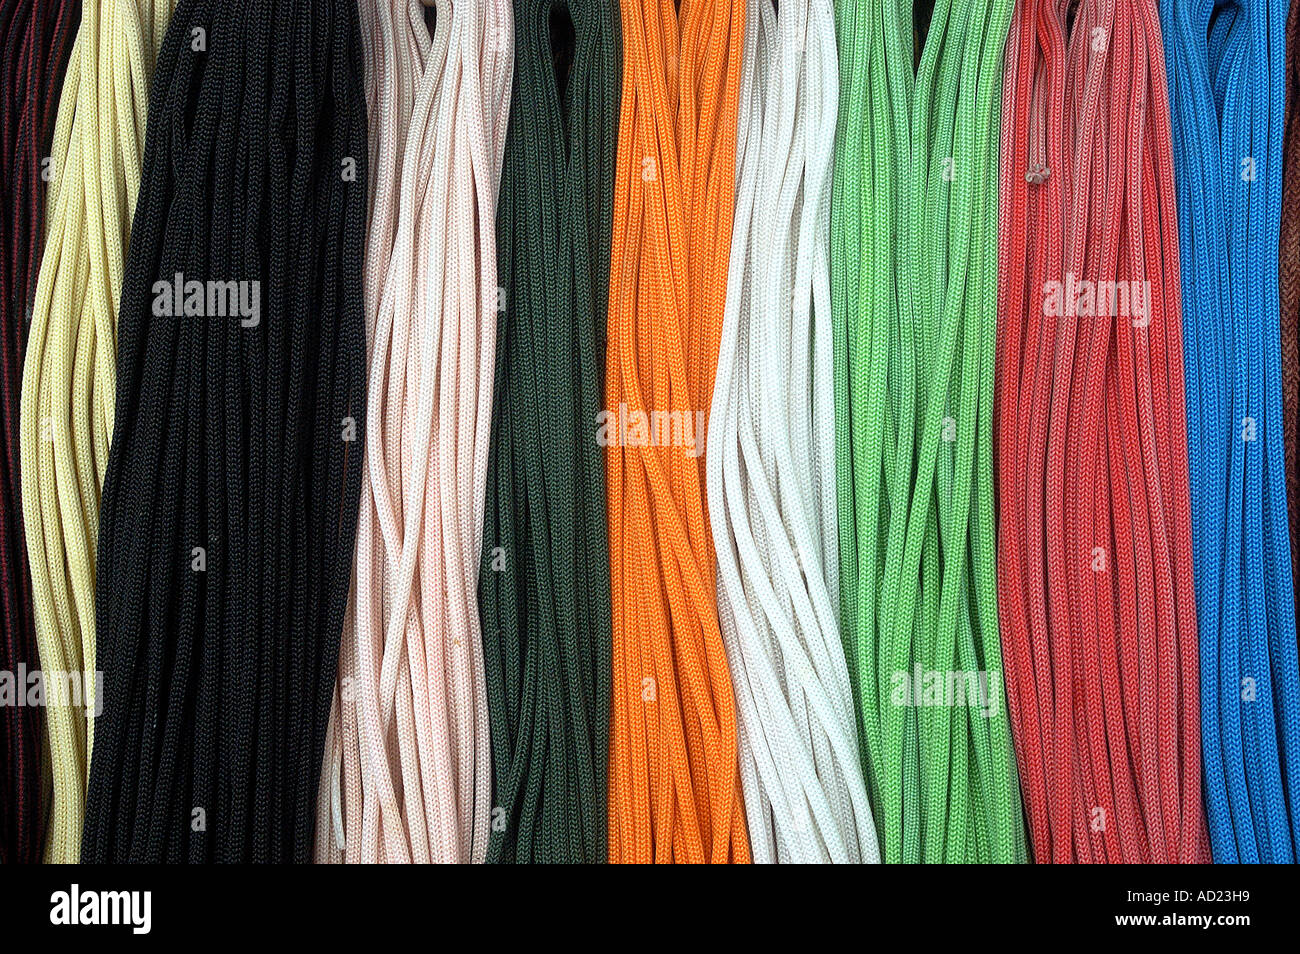 ASB73017 Colorful shoe laces for sale Bombay Mumbai Maharashtra India Stock Photo